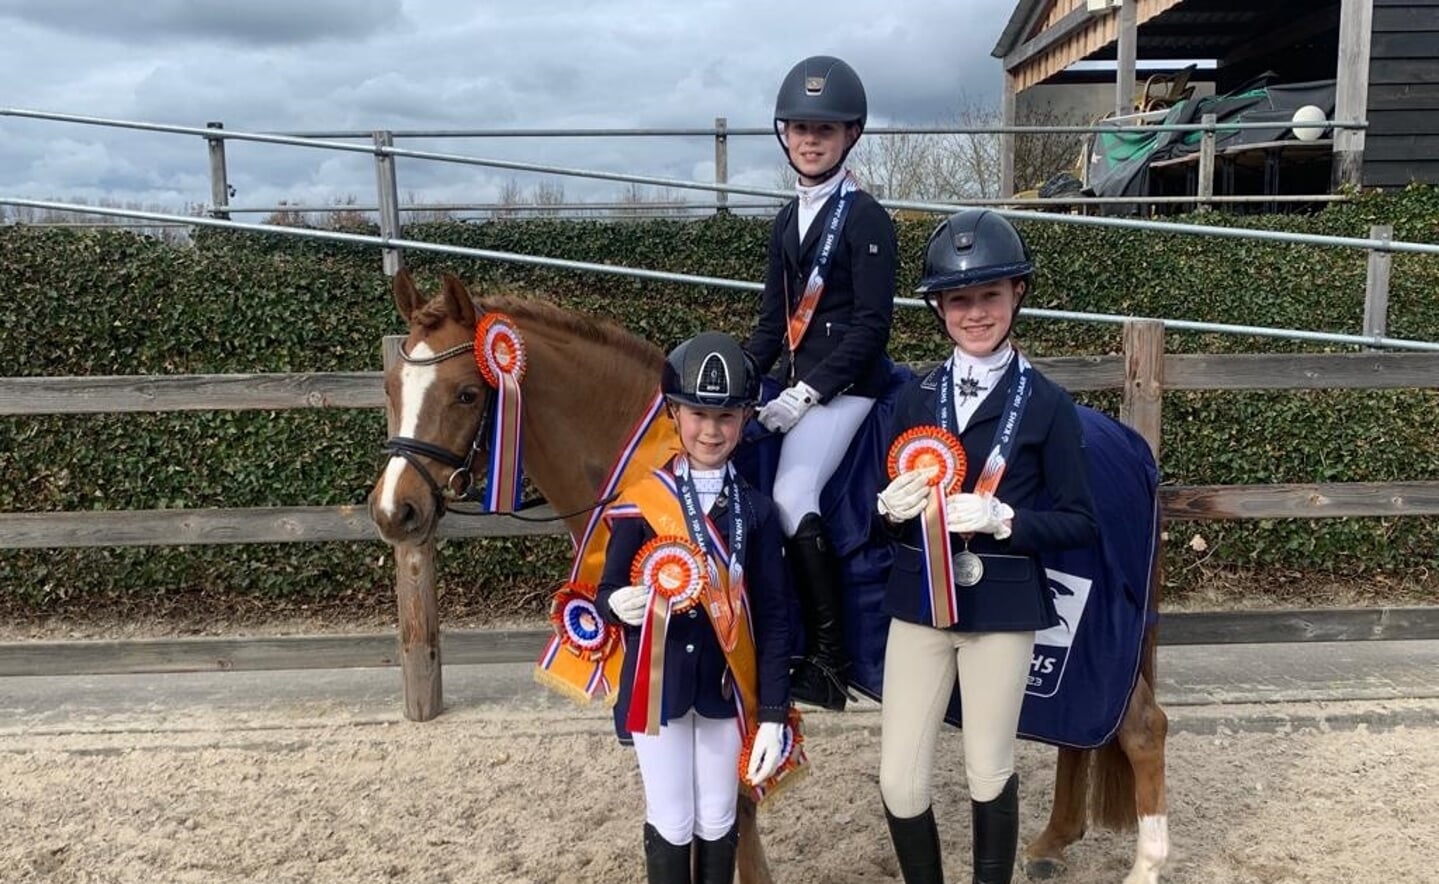 Ima van der Velden met haar pony Toby, Jolien Duijts (rechts) en Tess Gaakeer (links). Tess werd vorige week al nationaal kampioen, Jolien behaalde zaterdag zilver en Ima won goud.